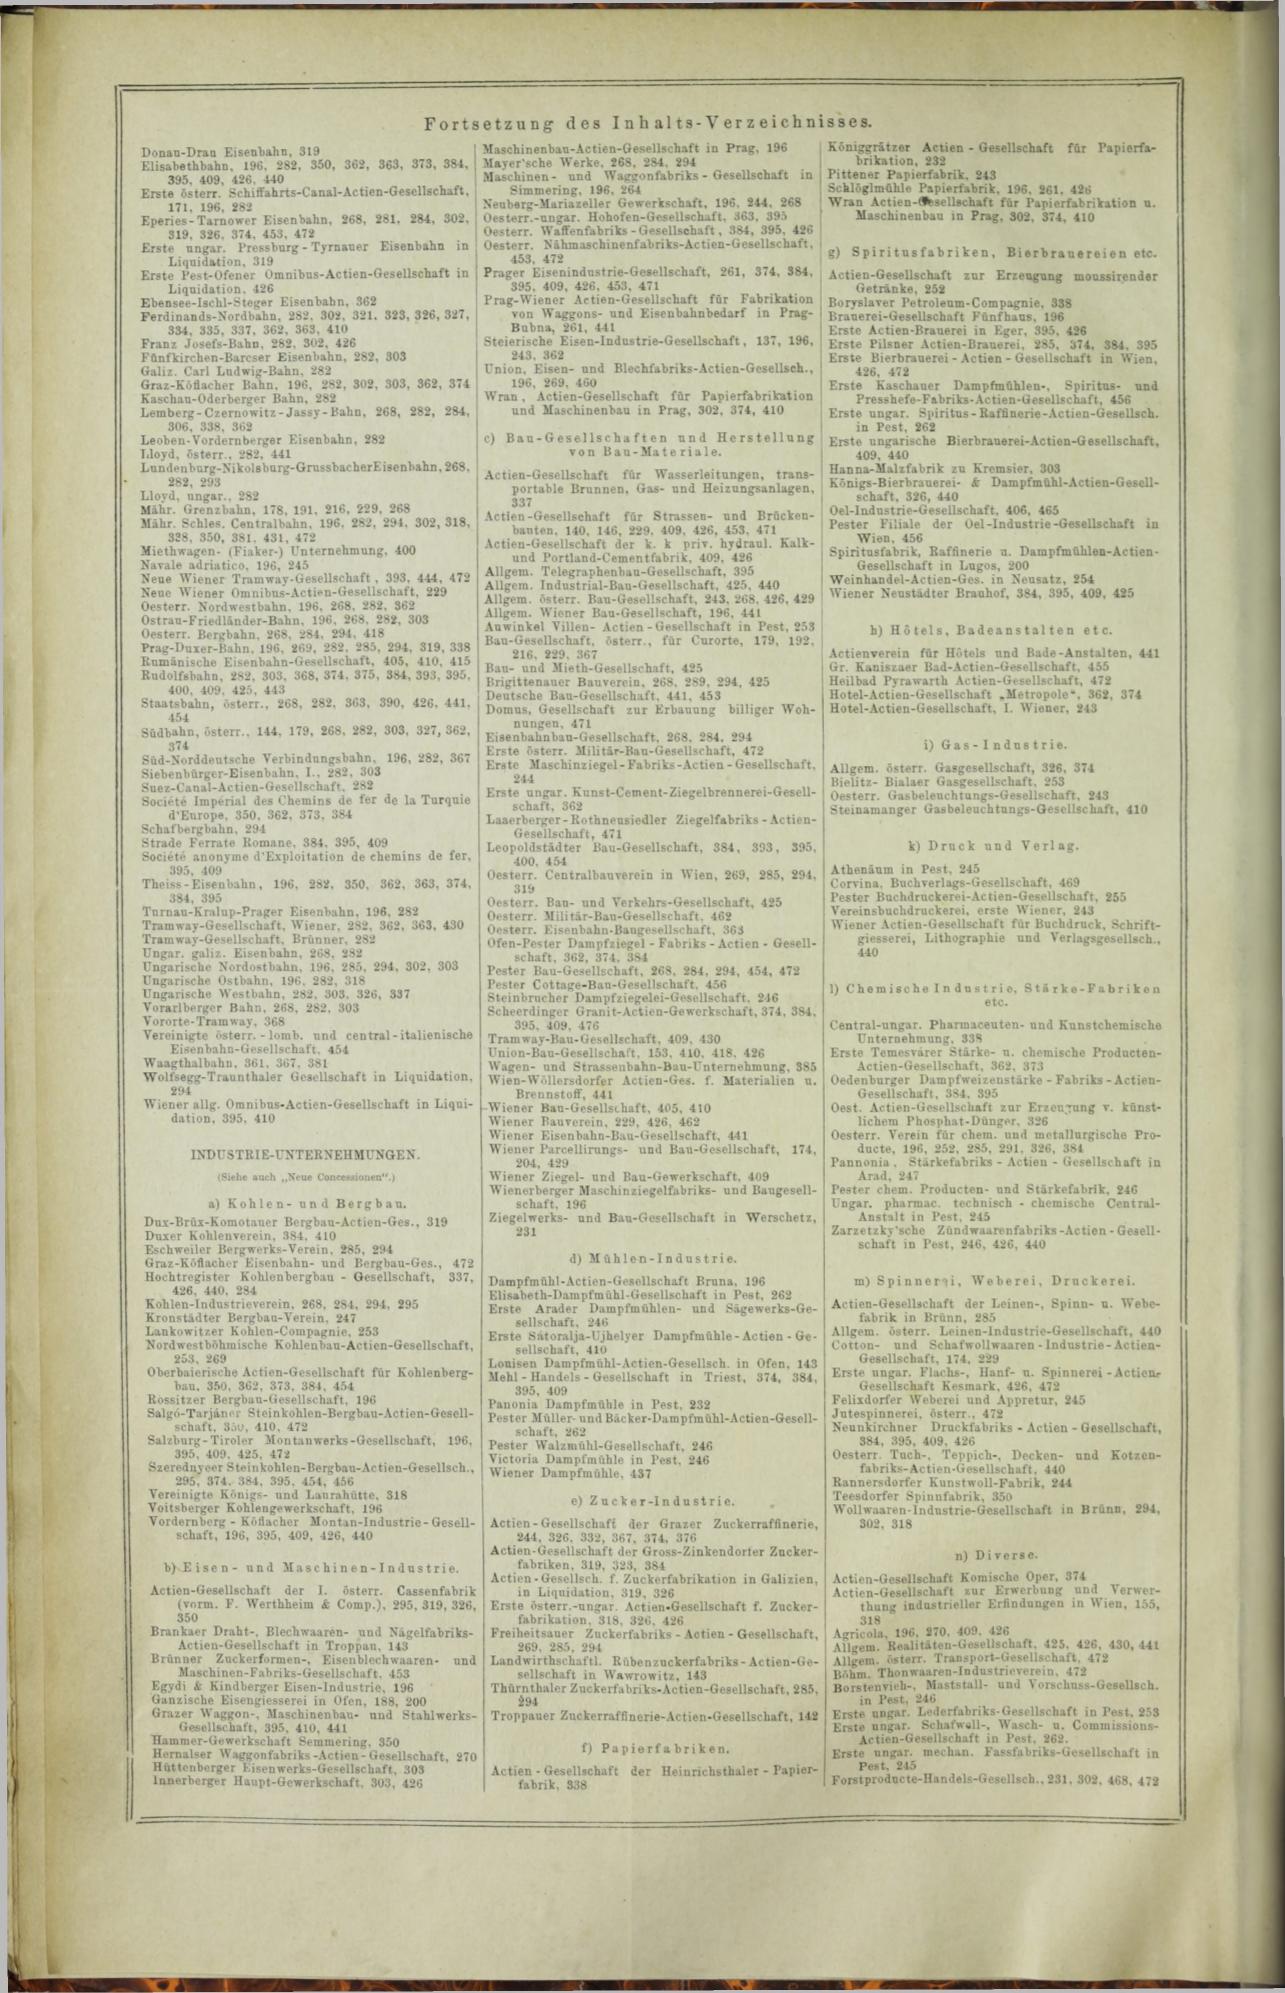 Der Tresor 16.10.1872 - Seite 12